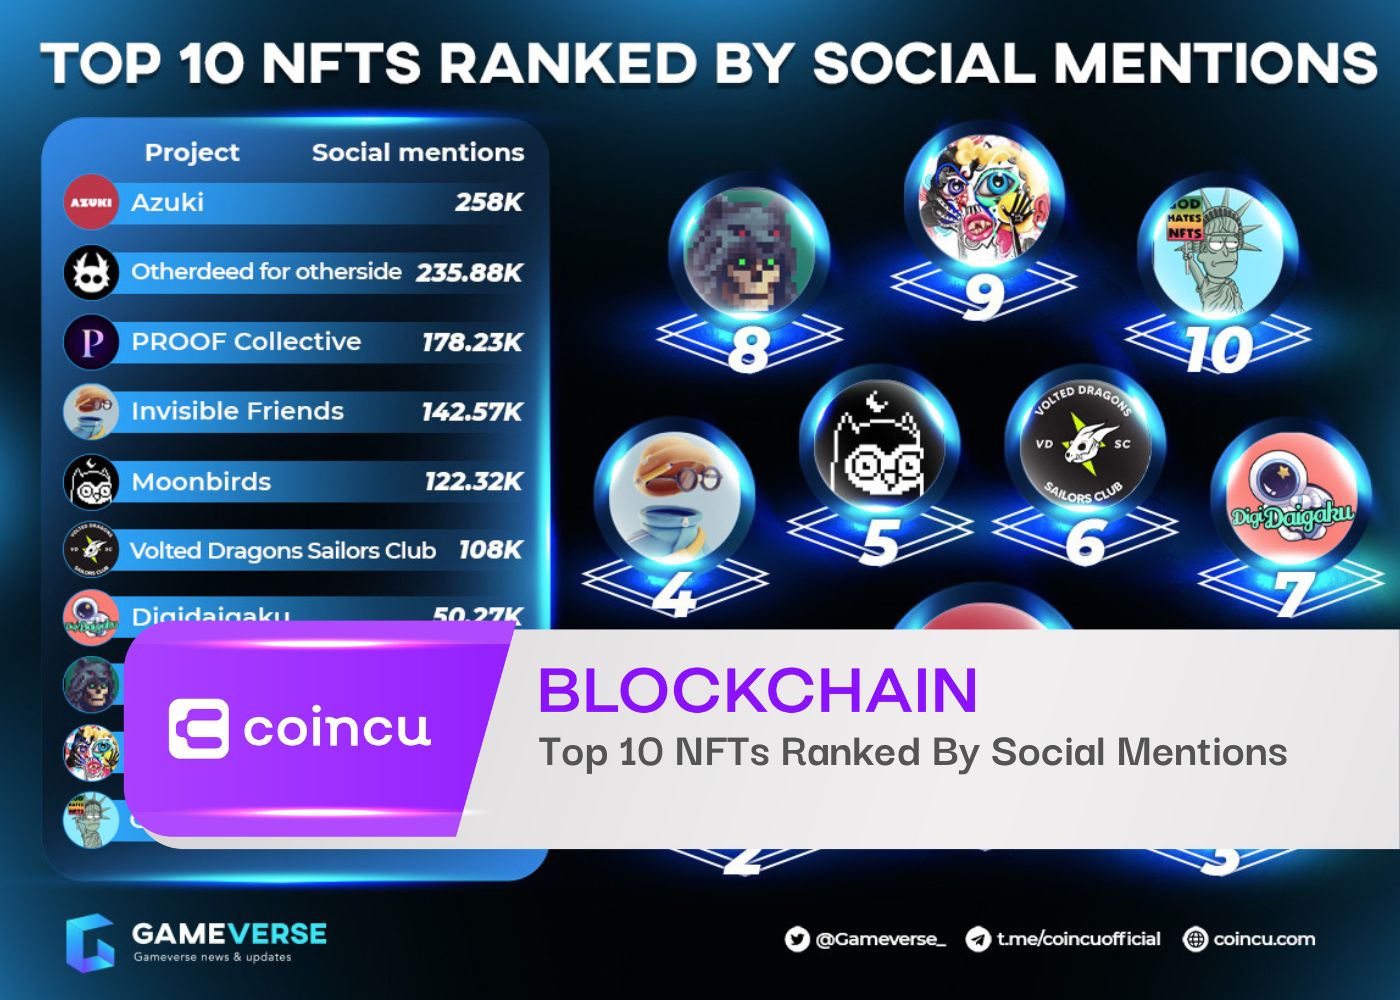 Top 10 des NFT classés par mentions sociales